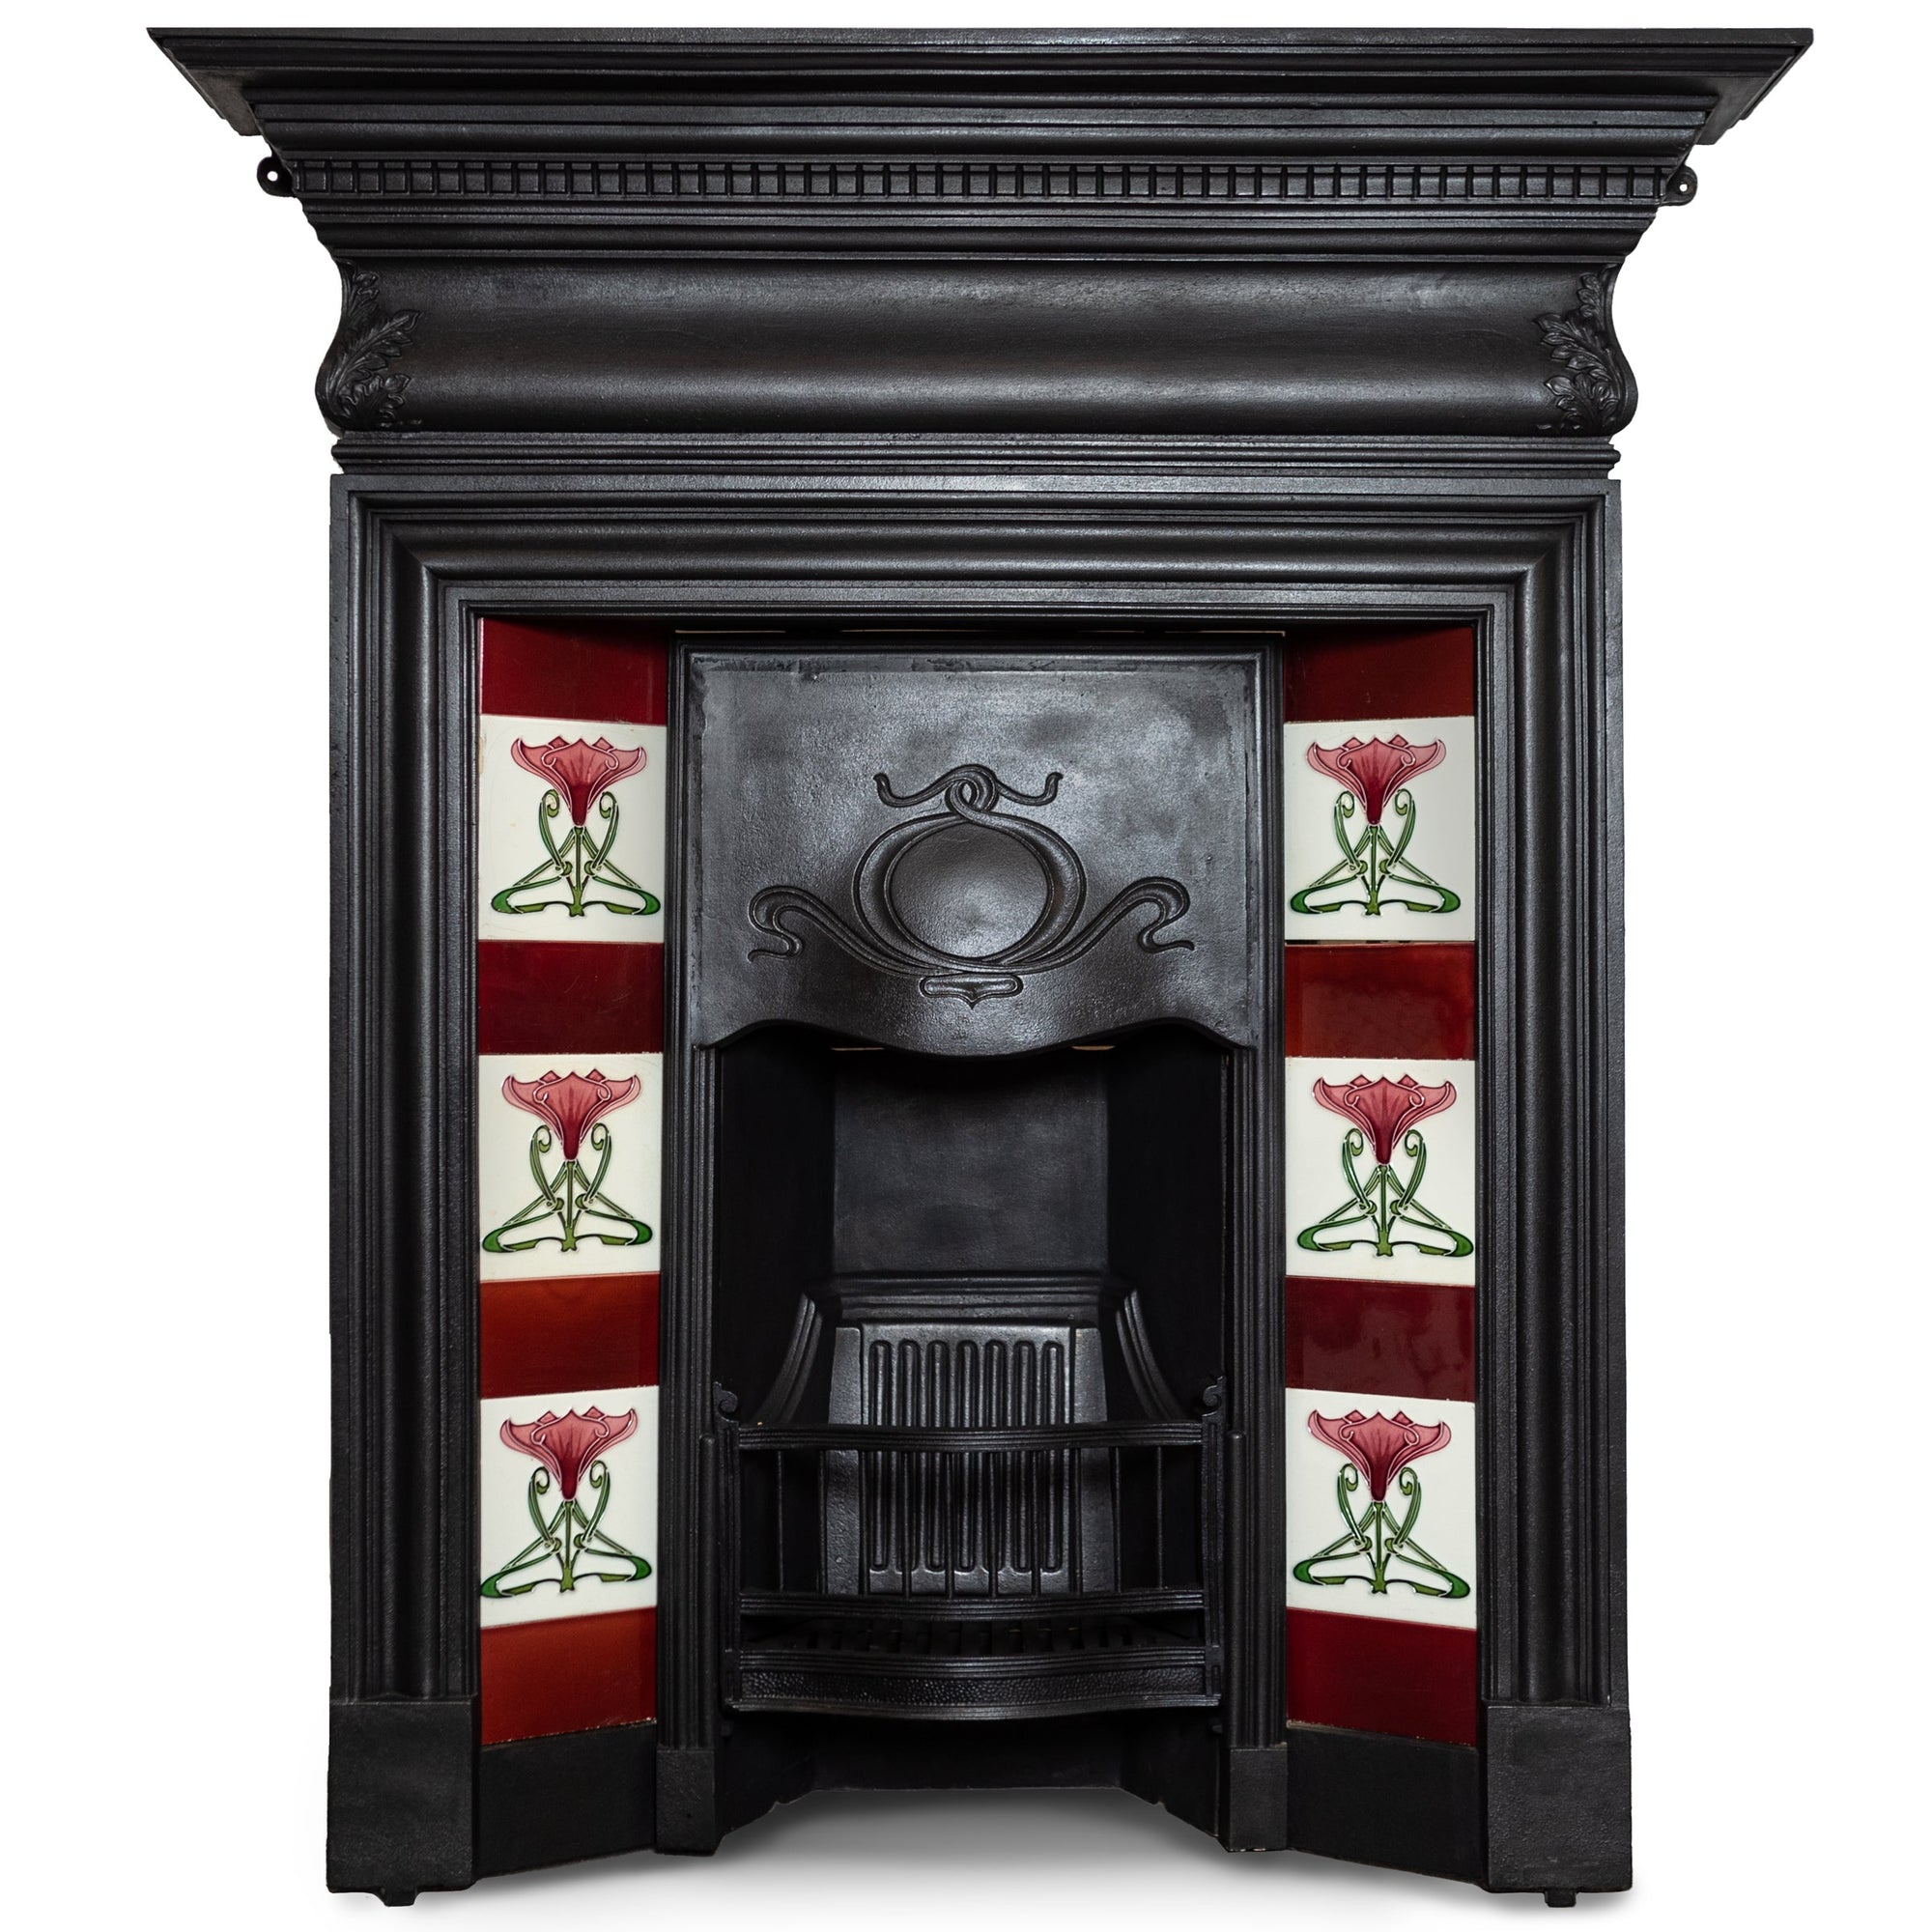 Antique Art Nouveau Tiled Combination Fireplace | The Architectural Forum